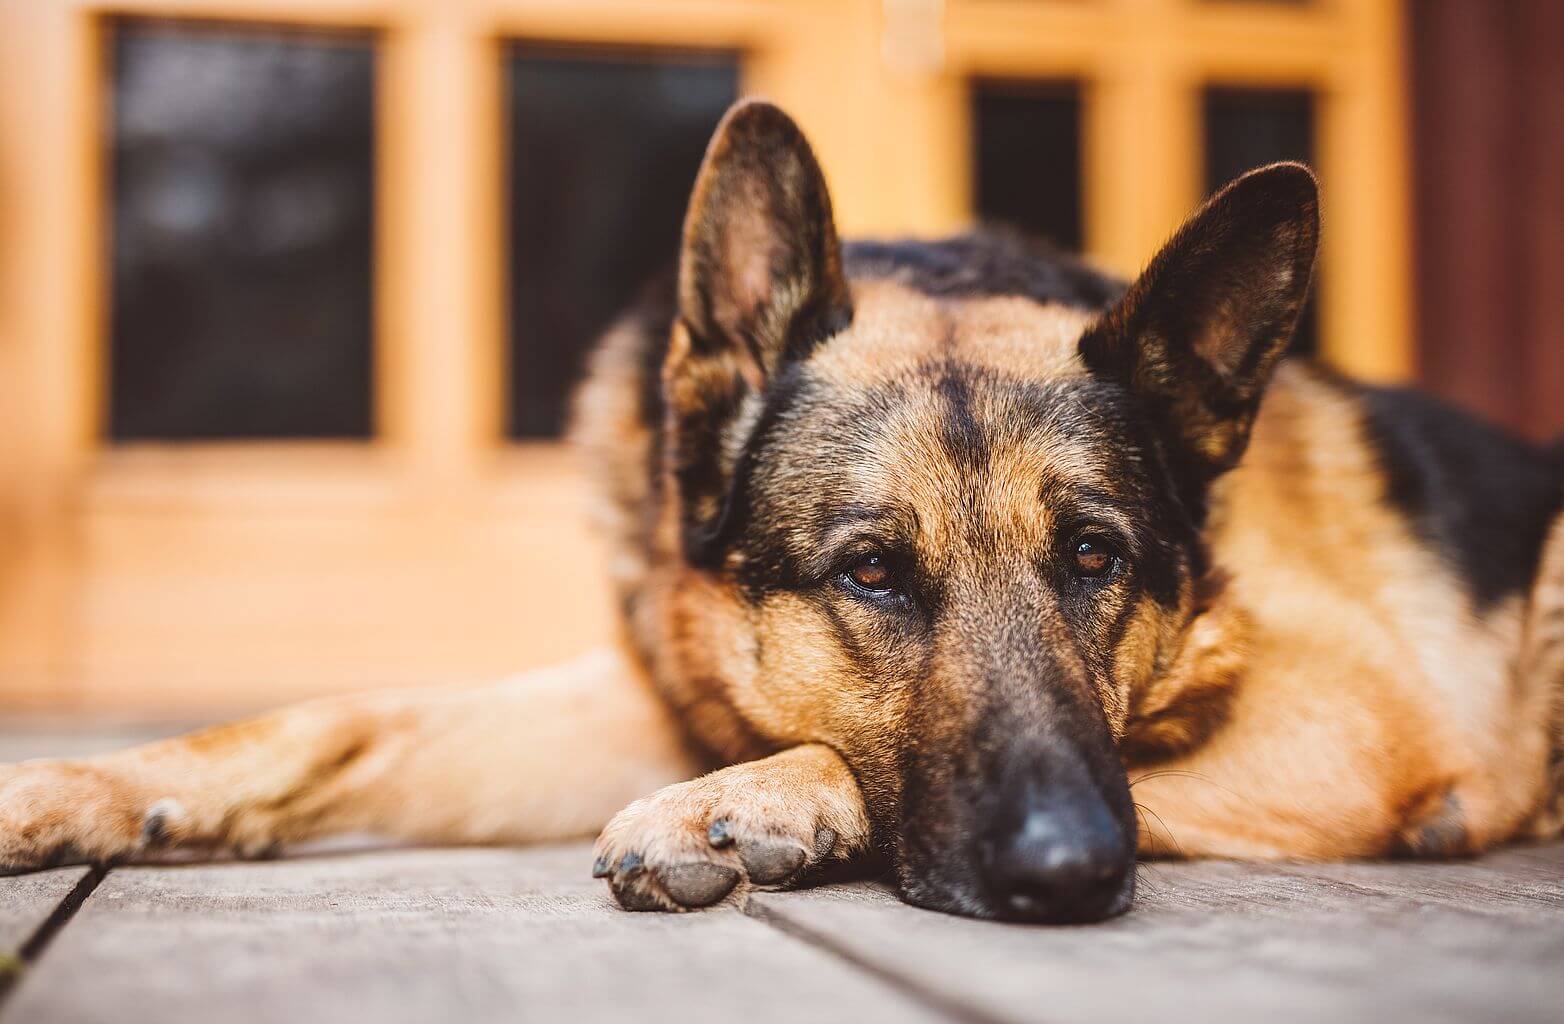 Odpoczywający pies rasy owczarek niemiecki